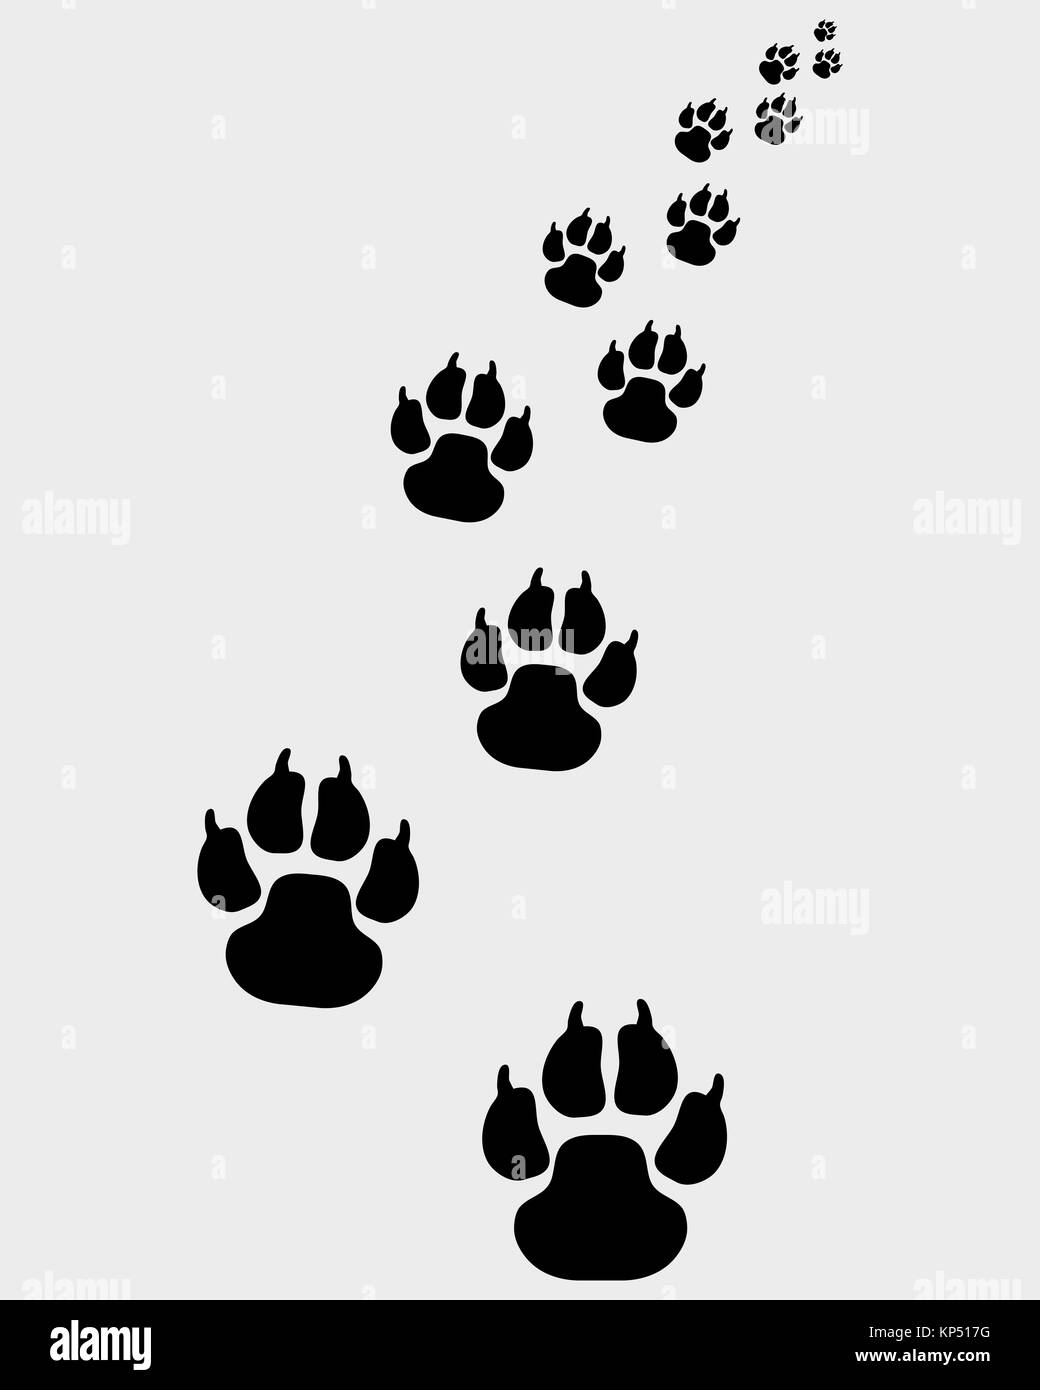 Huellas de pata de perro Imágenes de stock en blanco y negro - Alamy